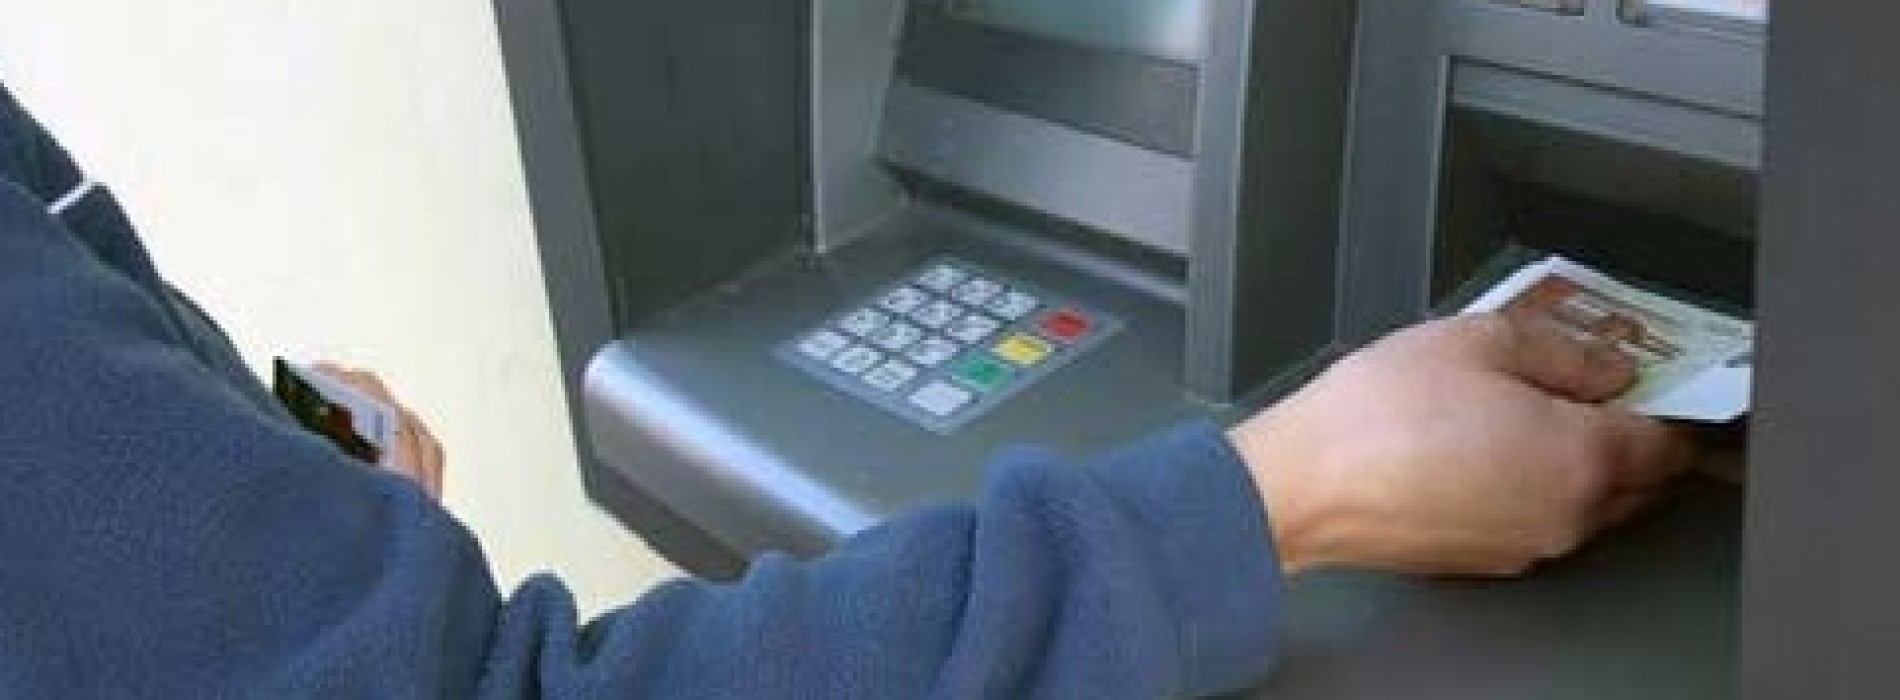 Co zrobić, gdy bankomat nie odda karty?